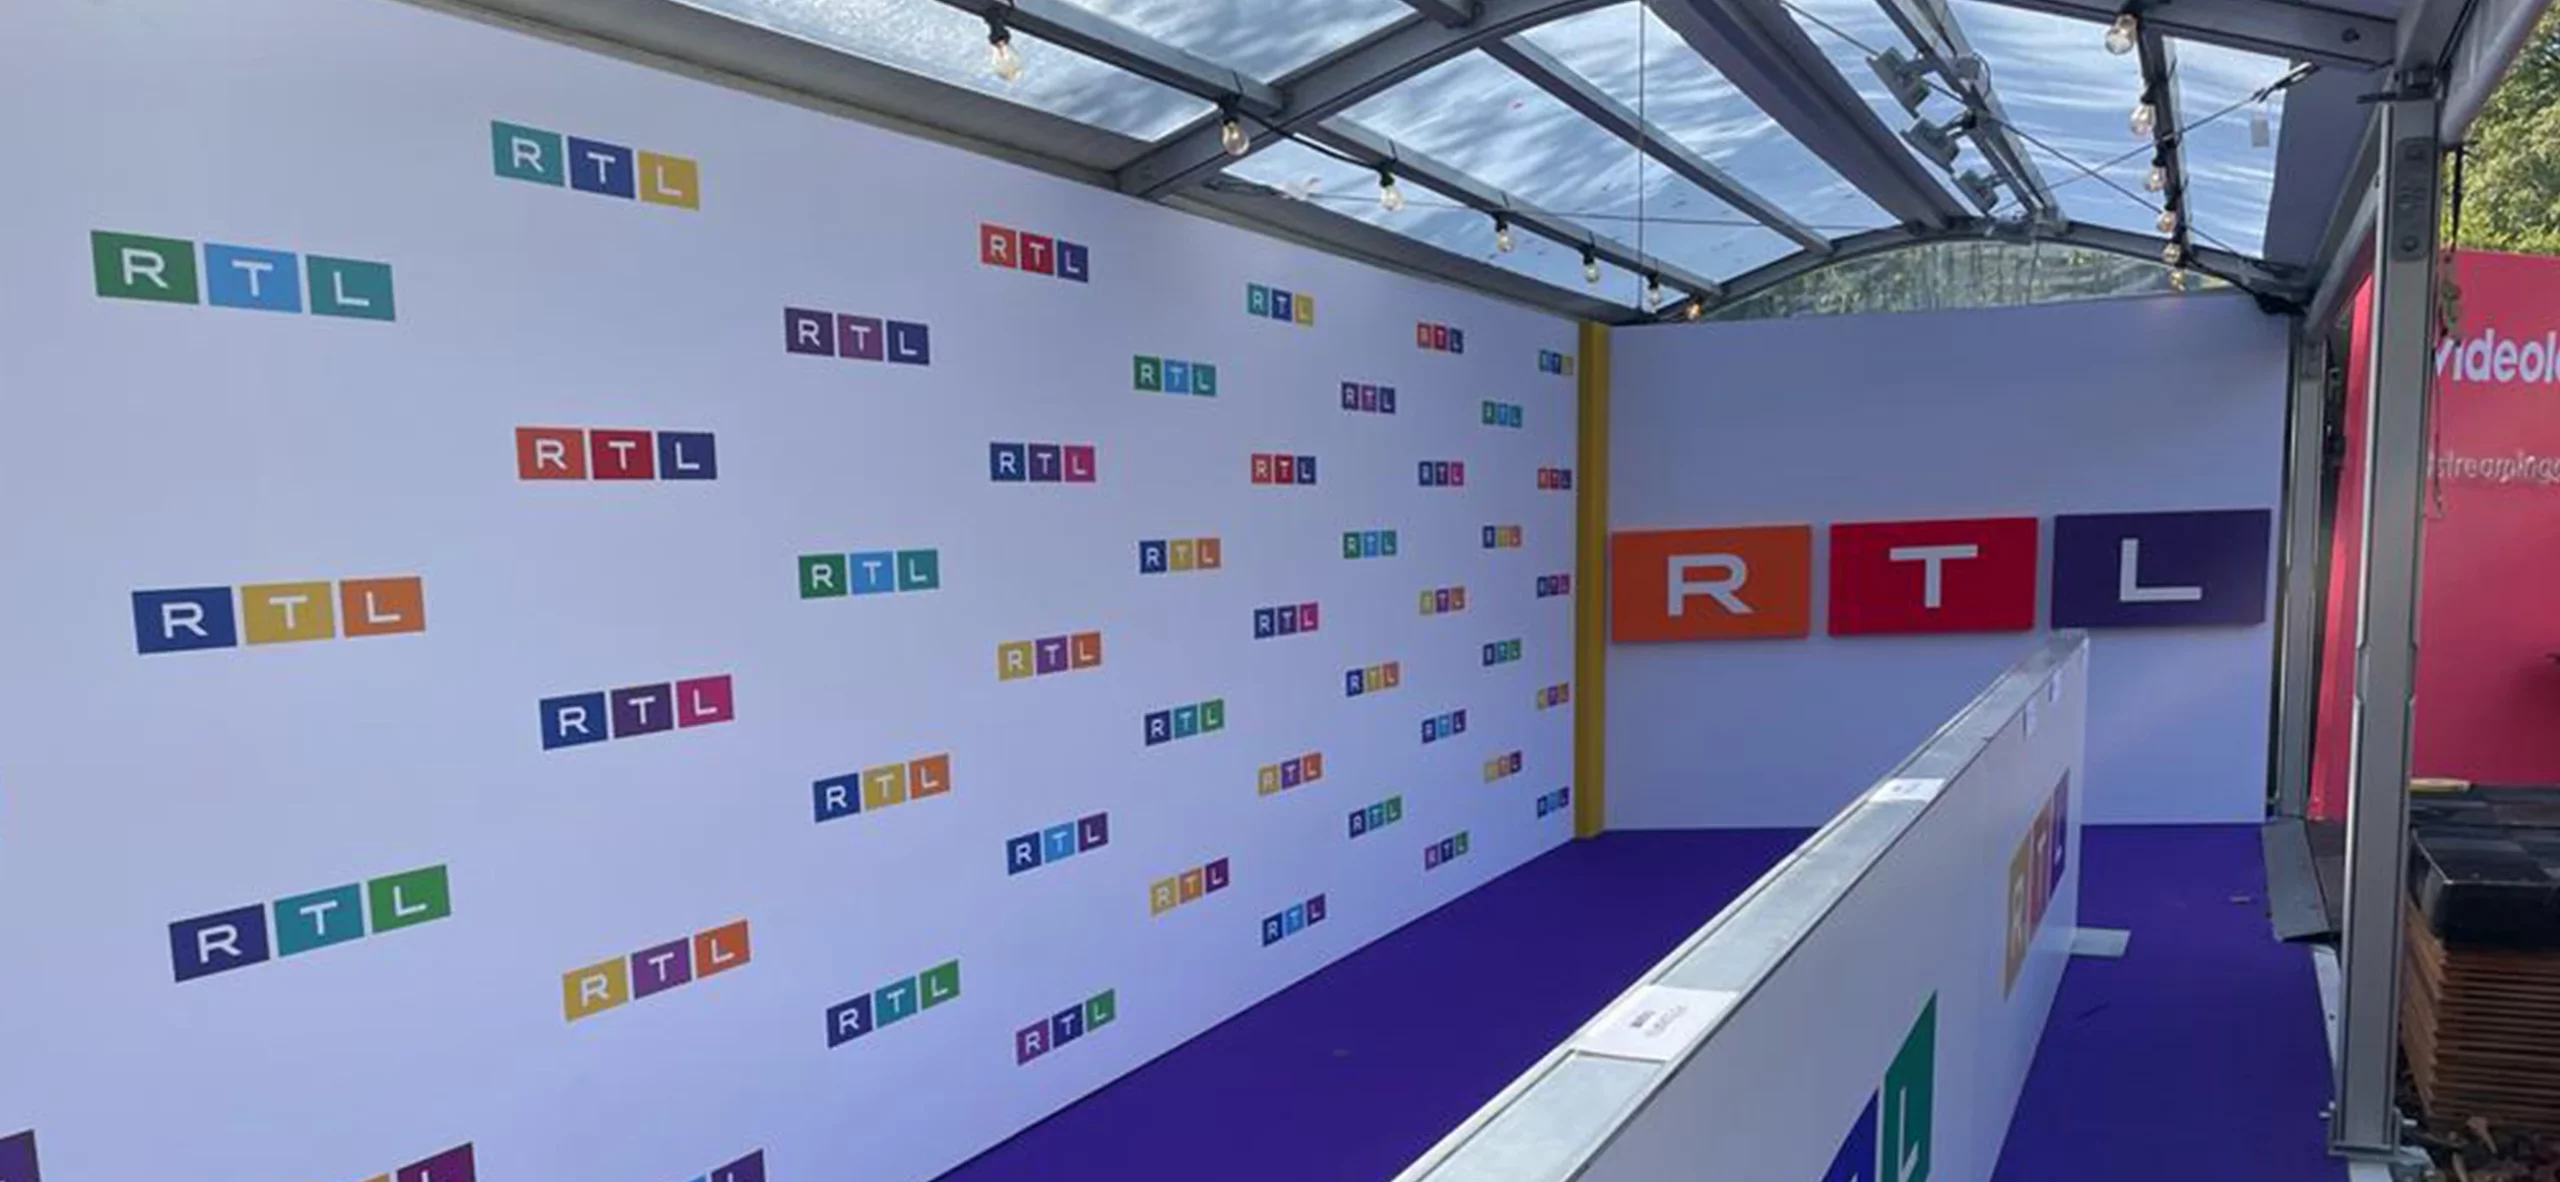 Business Medien Event RTL mit Red Carpet - überdachung mit Pergola Walkway von Intersettle Zeltverleih